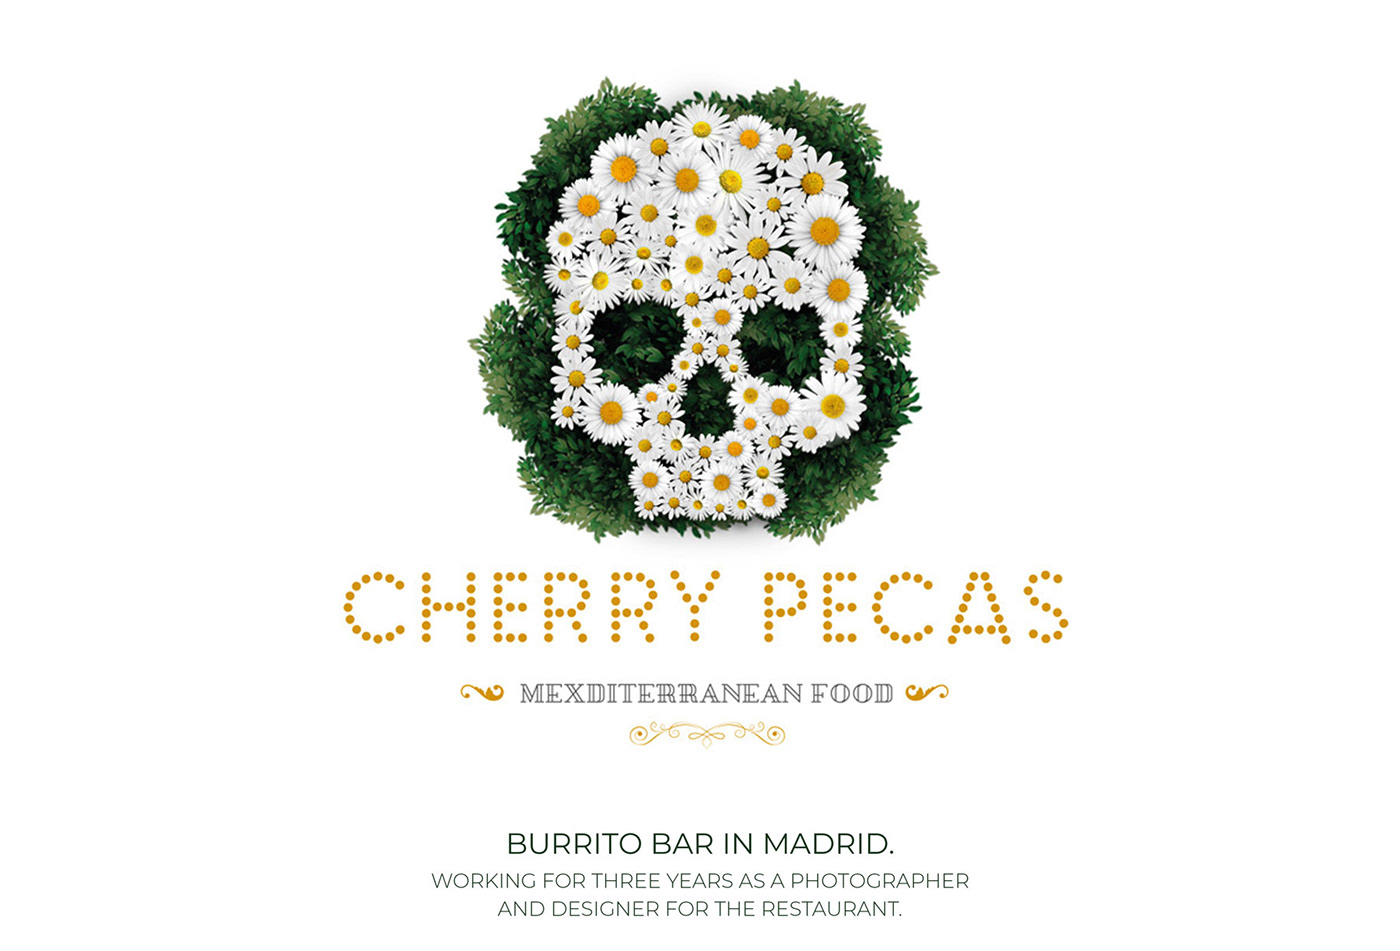 Cherry pecas mexditerranean food restaurant Mexican madrid